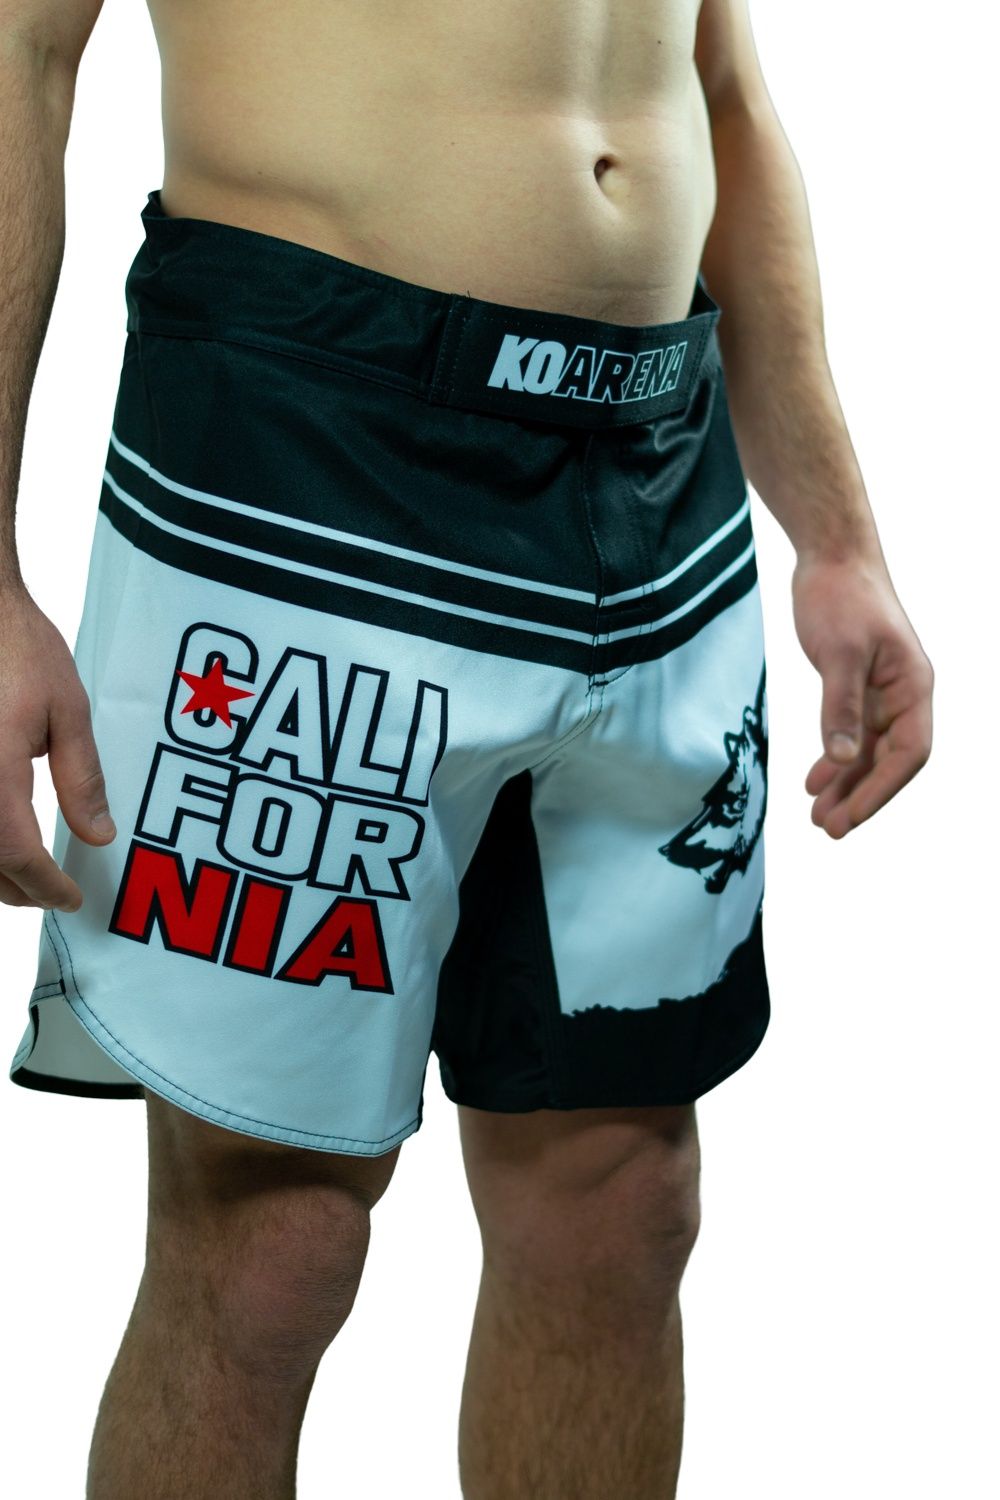 KOARENA Cali Bear Fight Shorts Blanco – KOARENA Fight Company